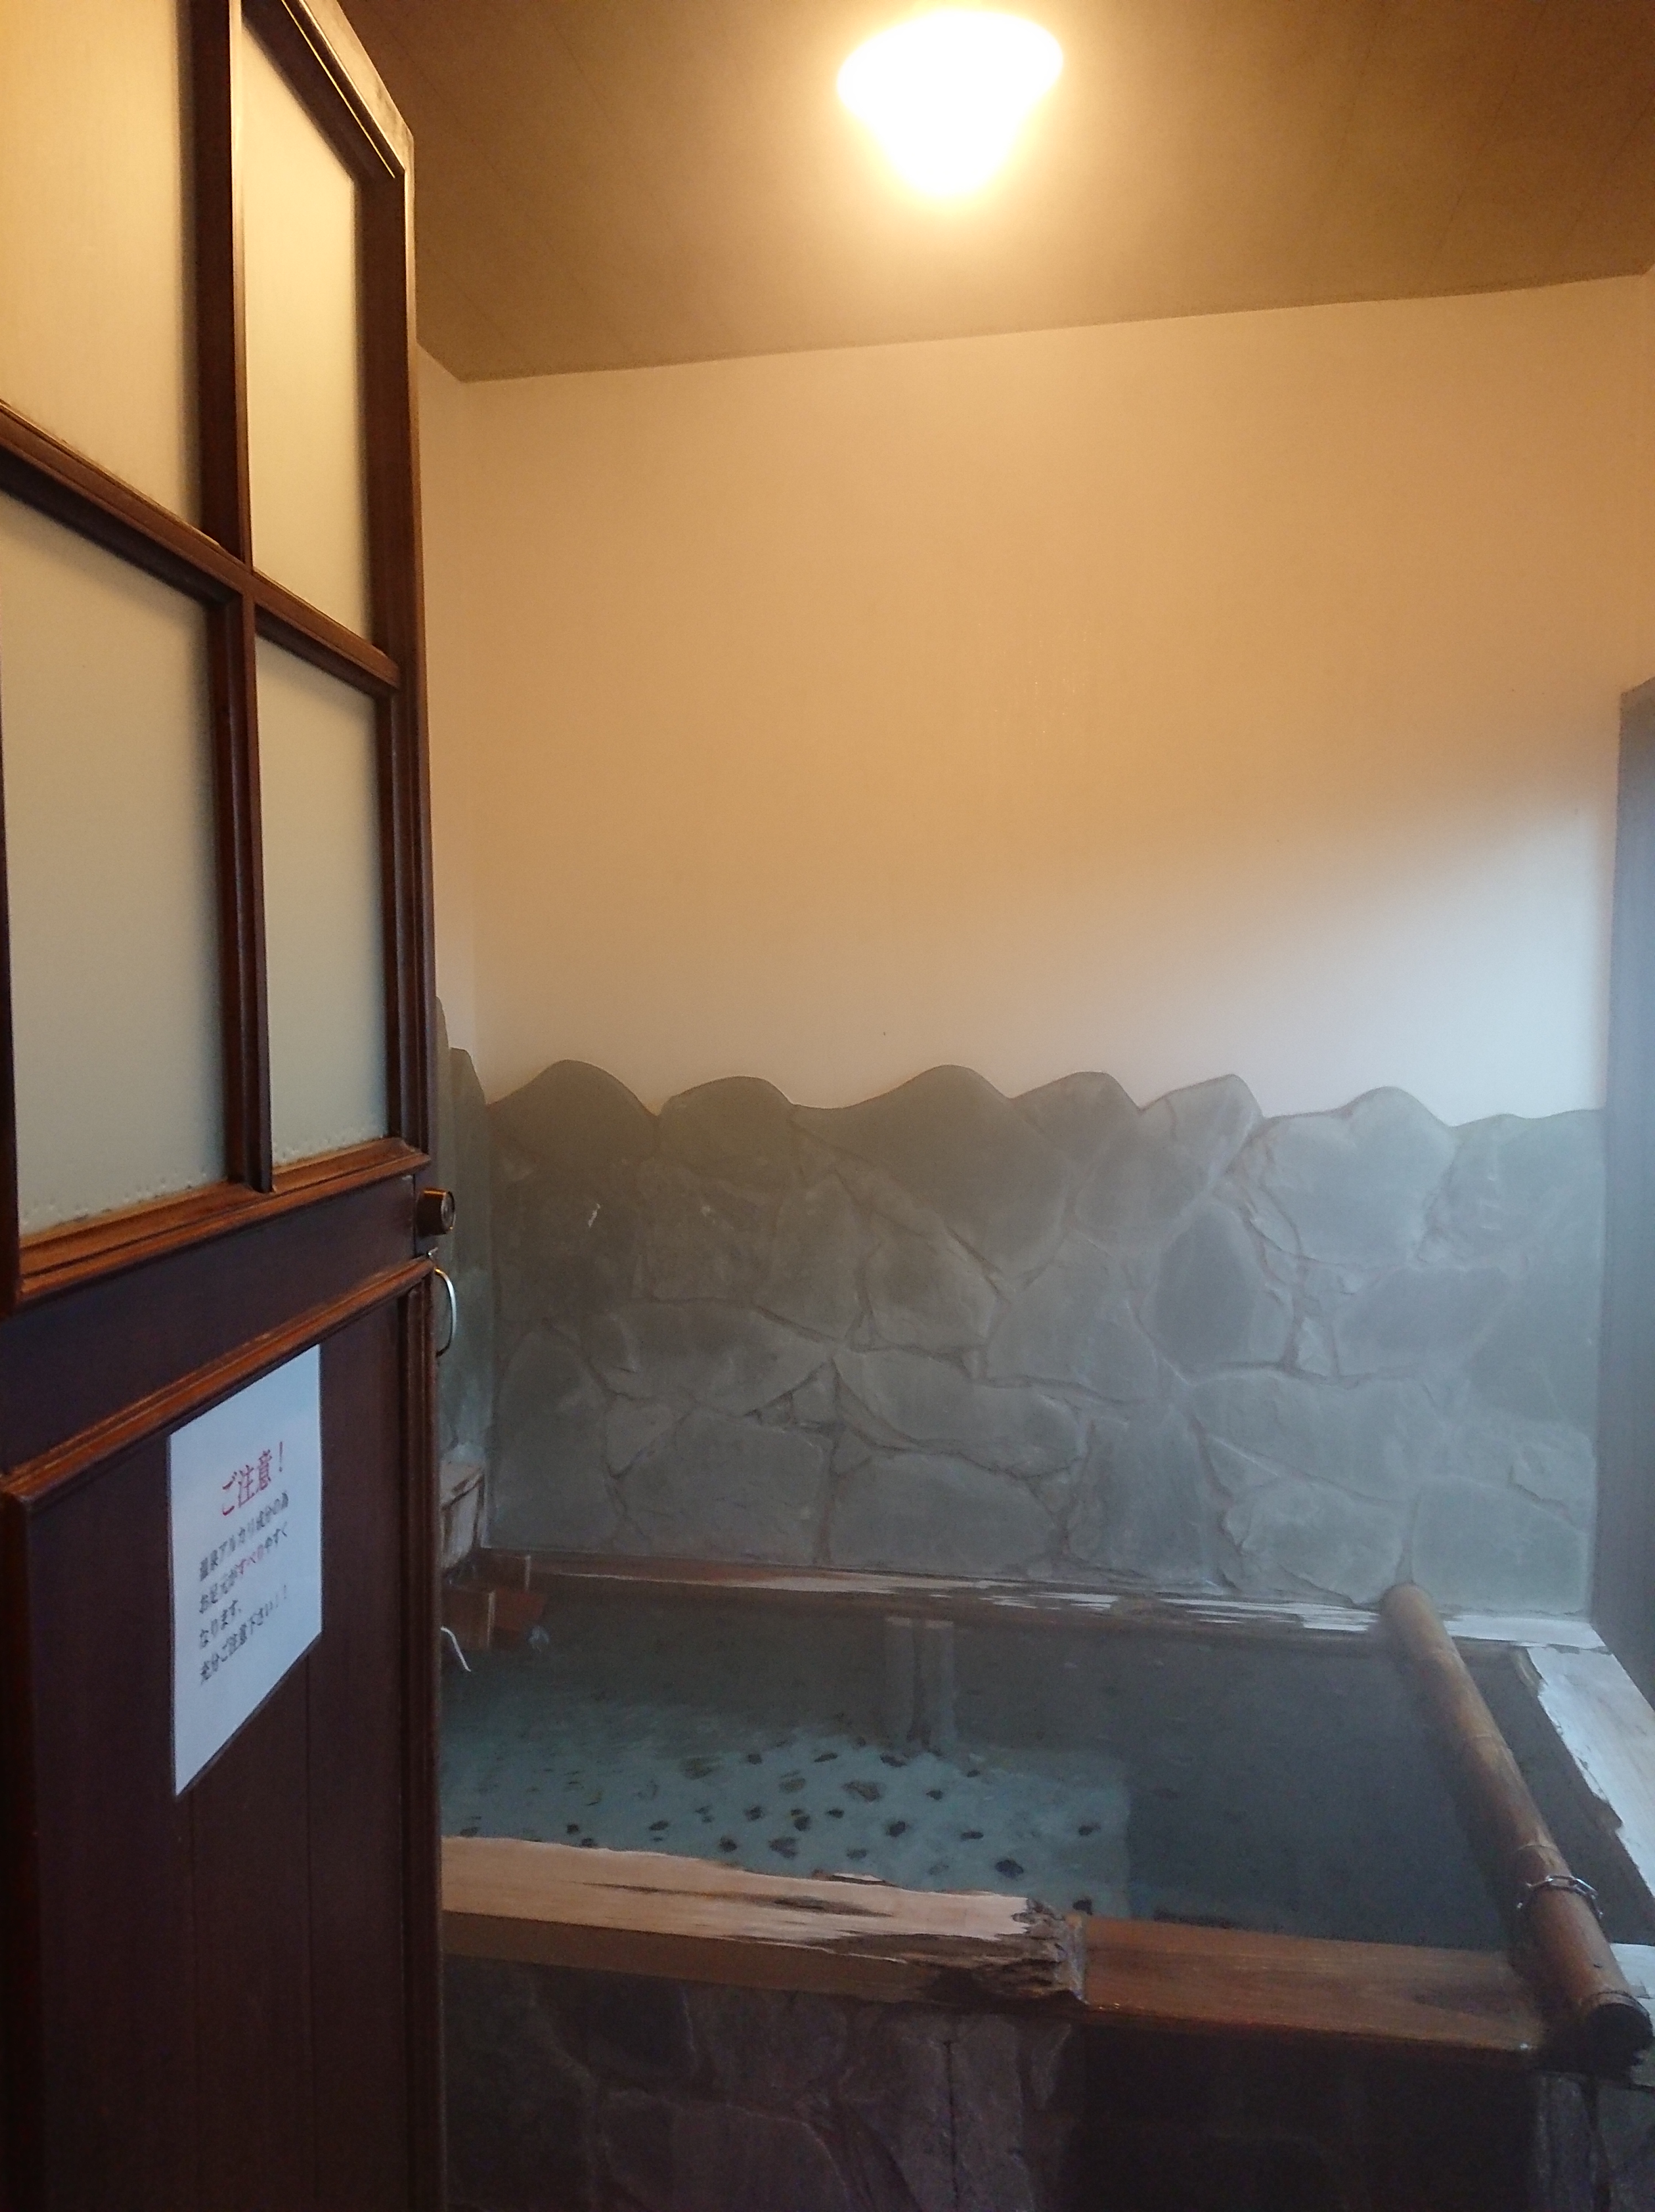 源泉かけ流し温泉の客室風呂は 立ち湯 ができて最高だった ほたるの長屋 宿泊記 おすすめ宿のブログ